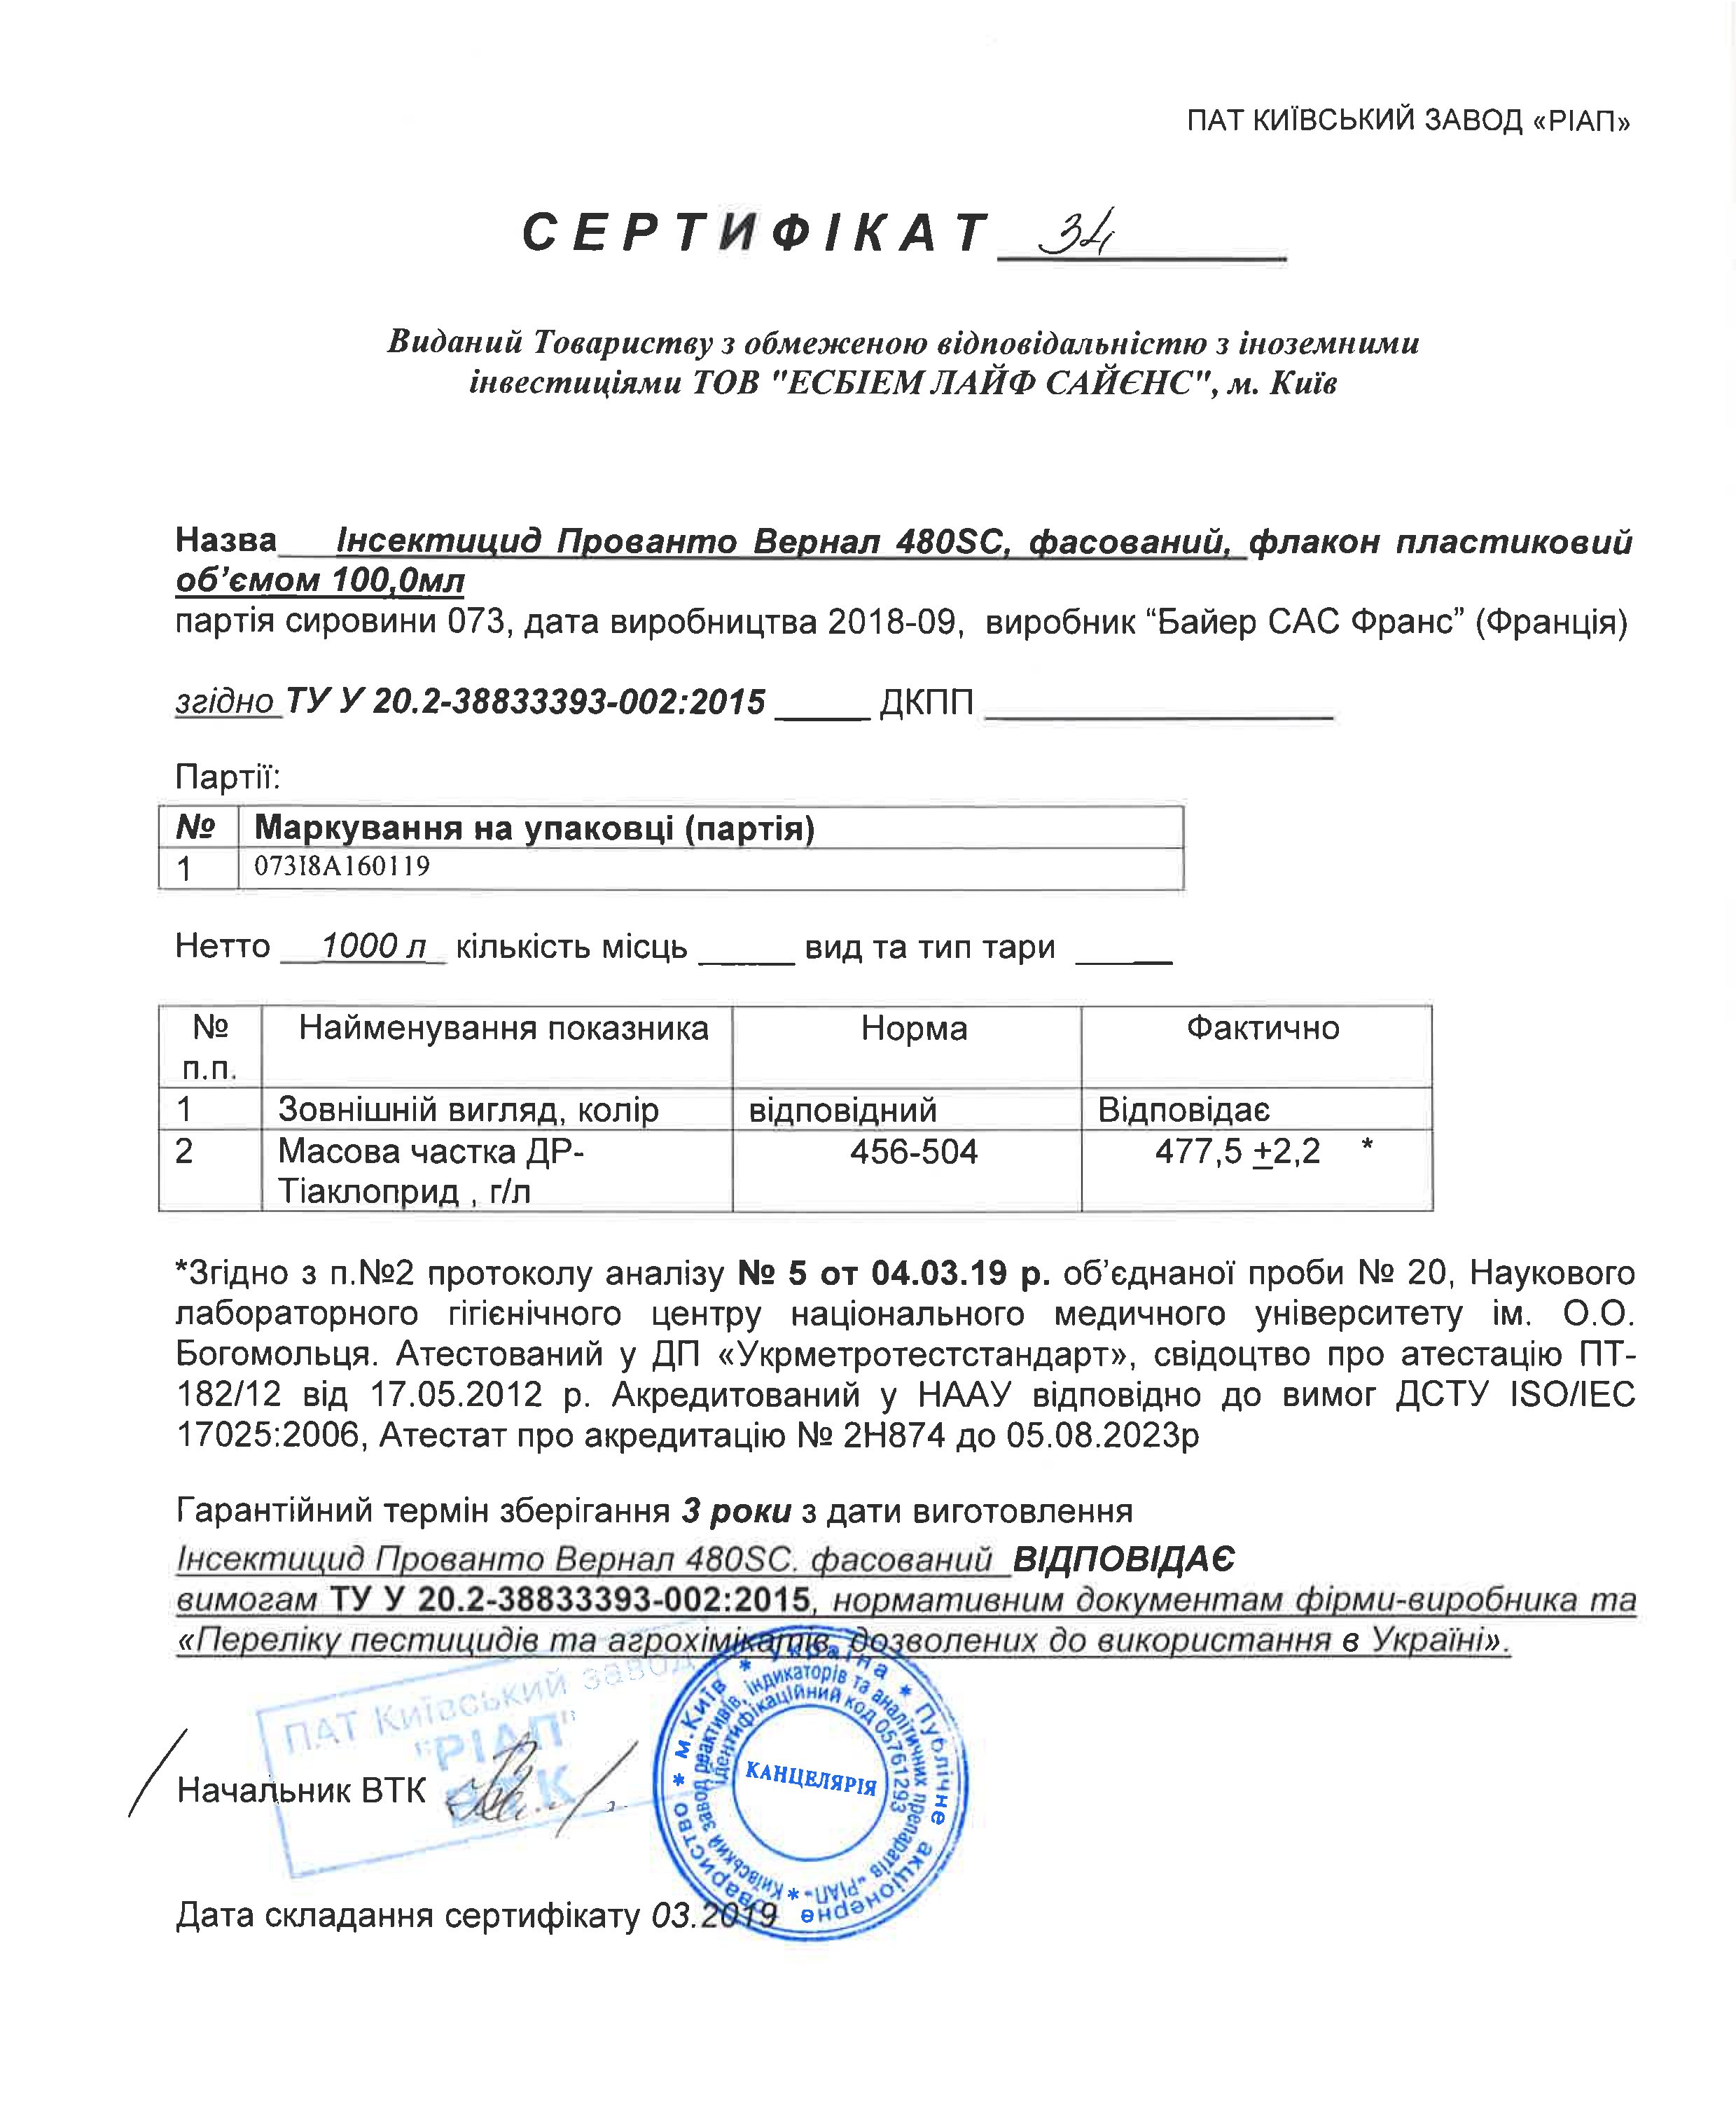 Сертифікат інсектицид Прованто Вернал (Каліпсо) Bayer